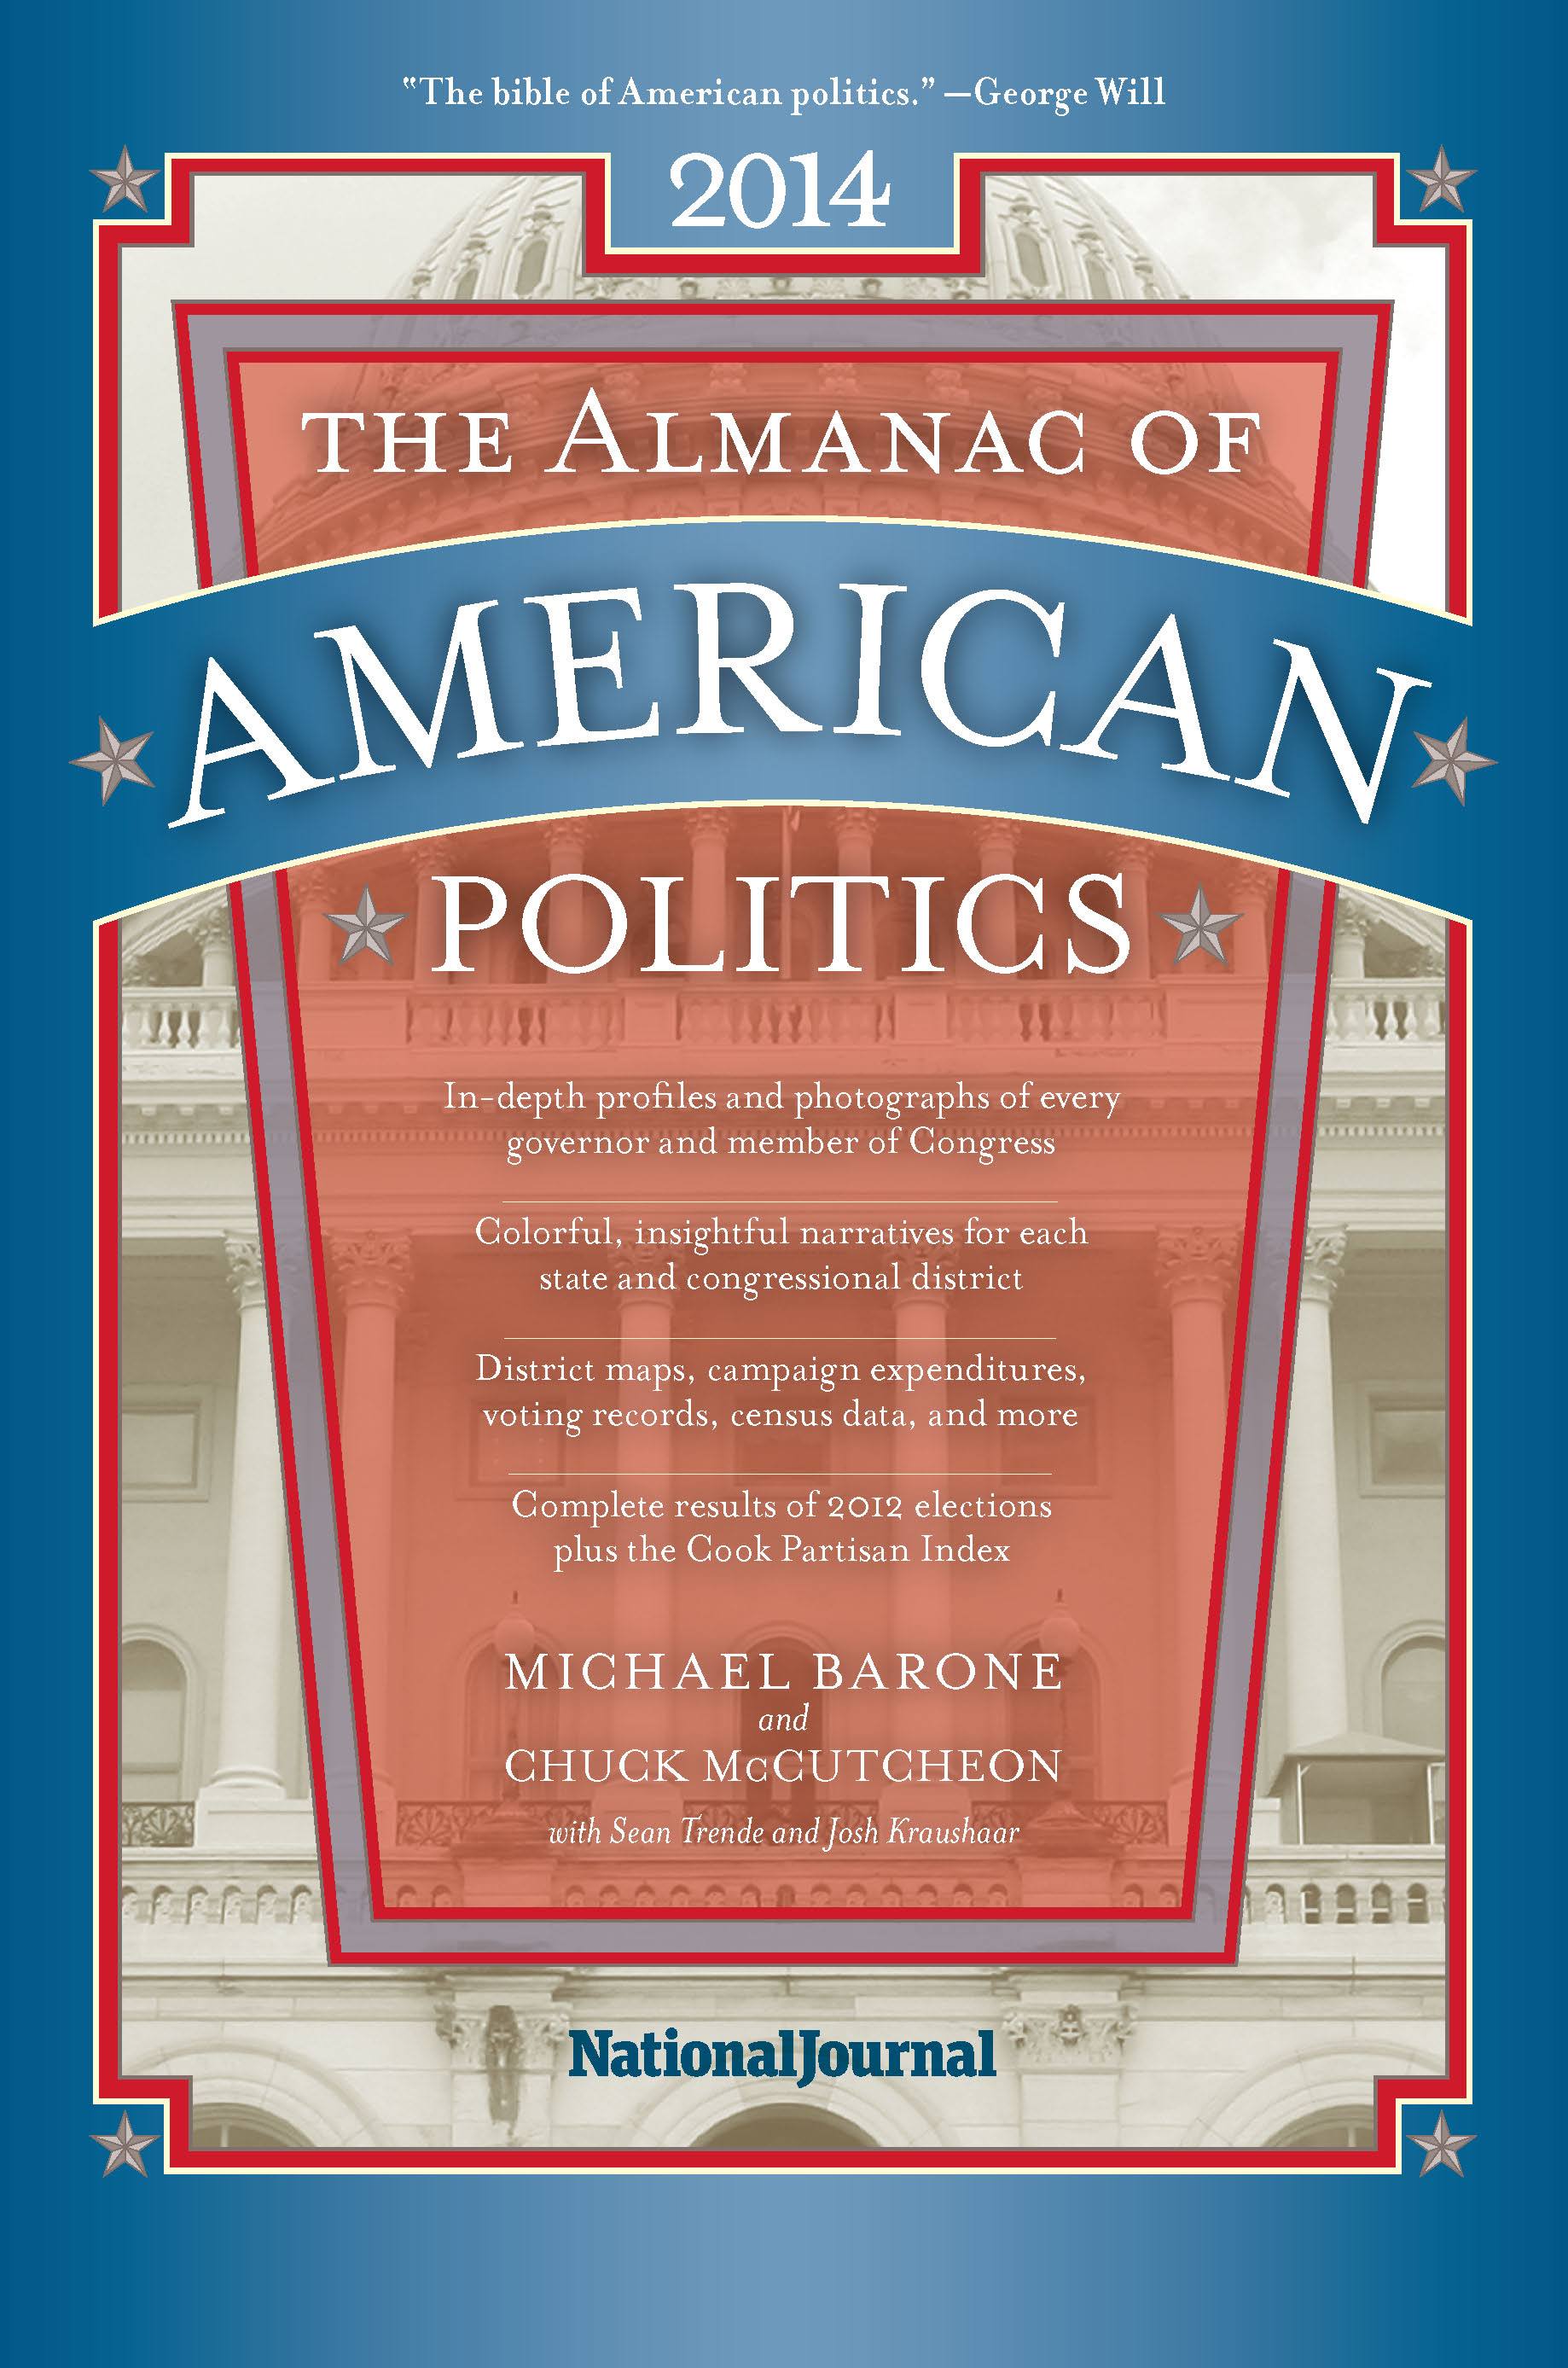 The Almanac of American Politics 2014, Barone, McCutcheon, Trende